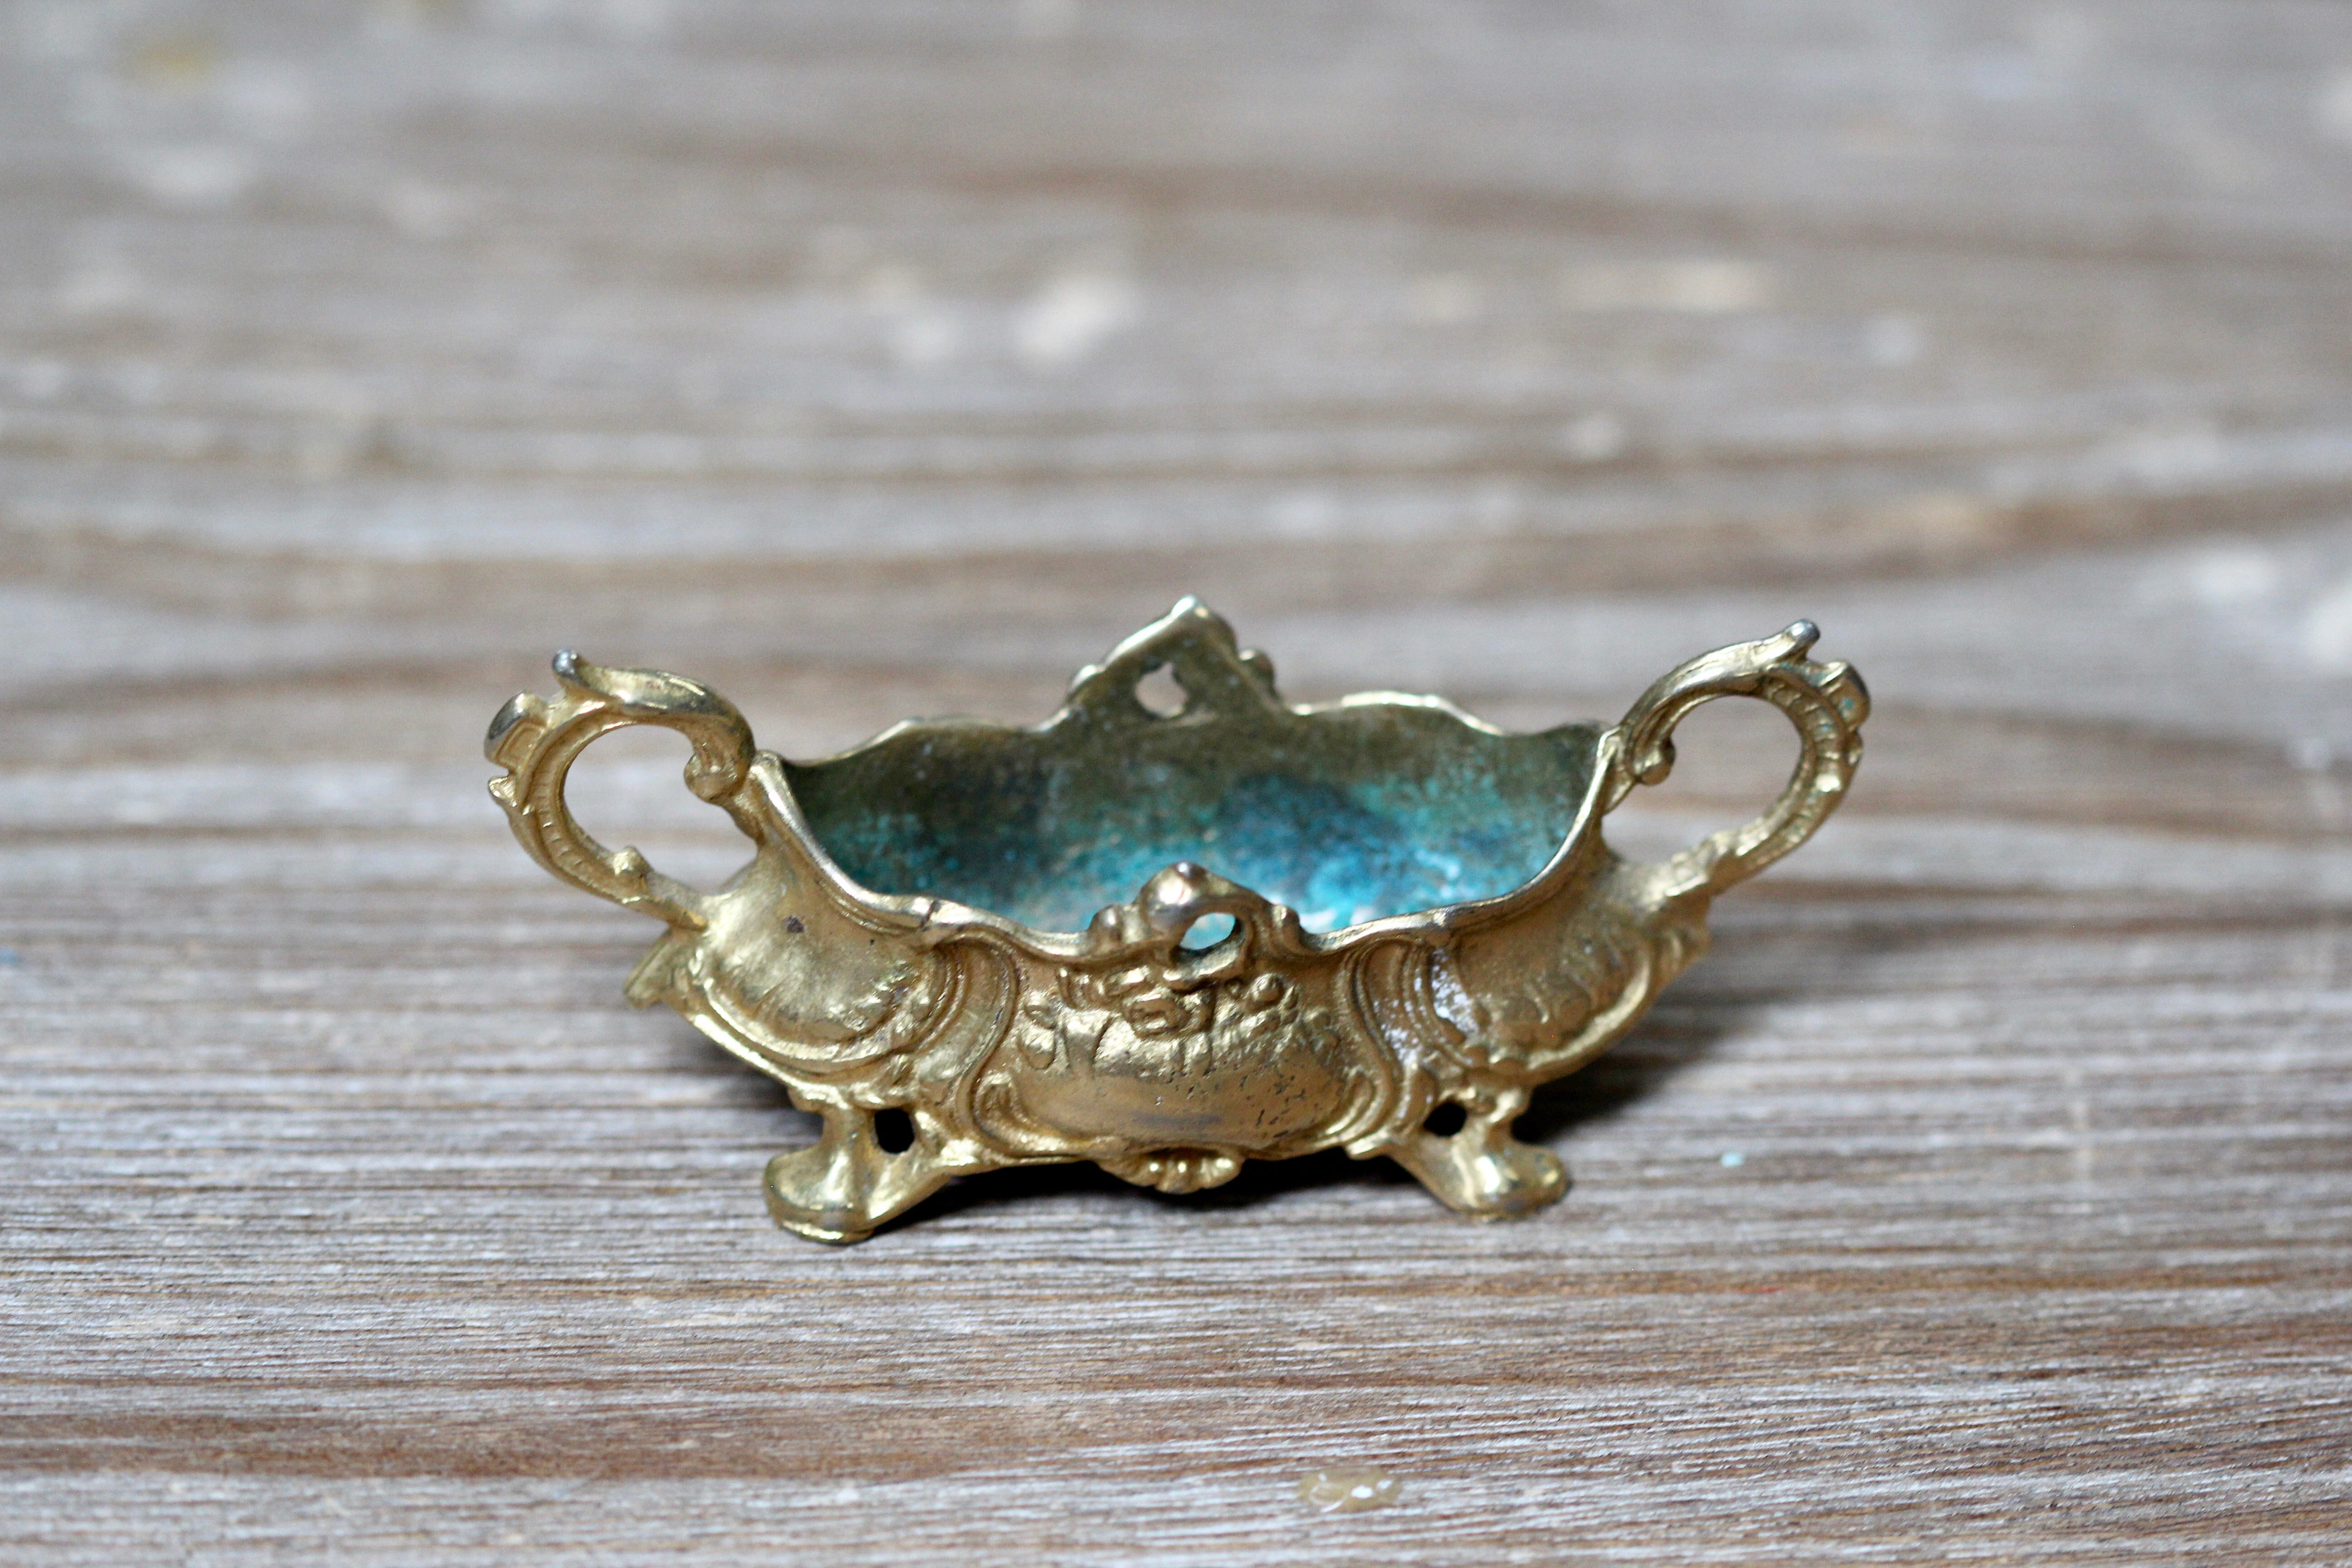 Antique Italian Bronze Jewelry Trinket